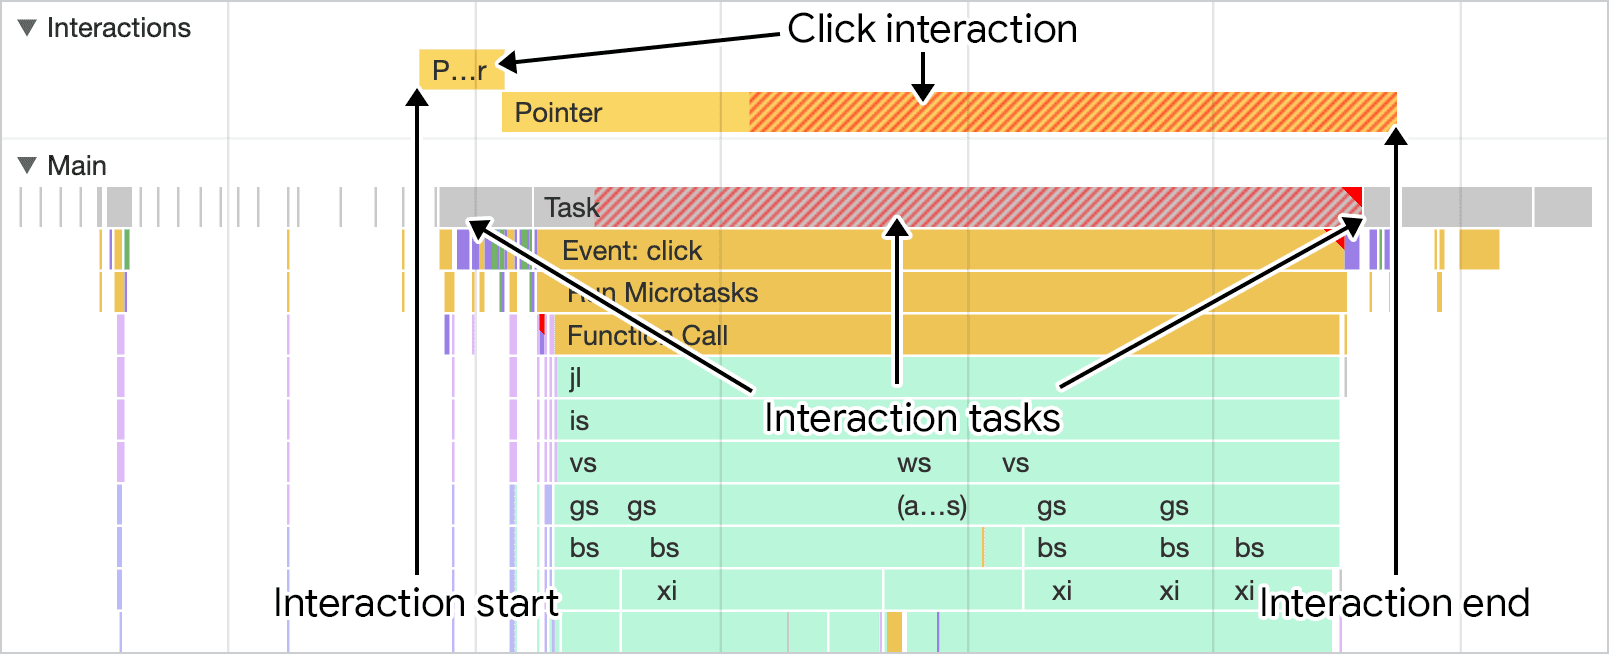 Chrome 開發人員工具效能面板中視覺化互動的螢幕截圖。主要執行緒追蹤上方的互動追蹤會顯示互動時間長度，可與主要執行緒活動合併。